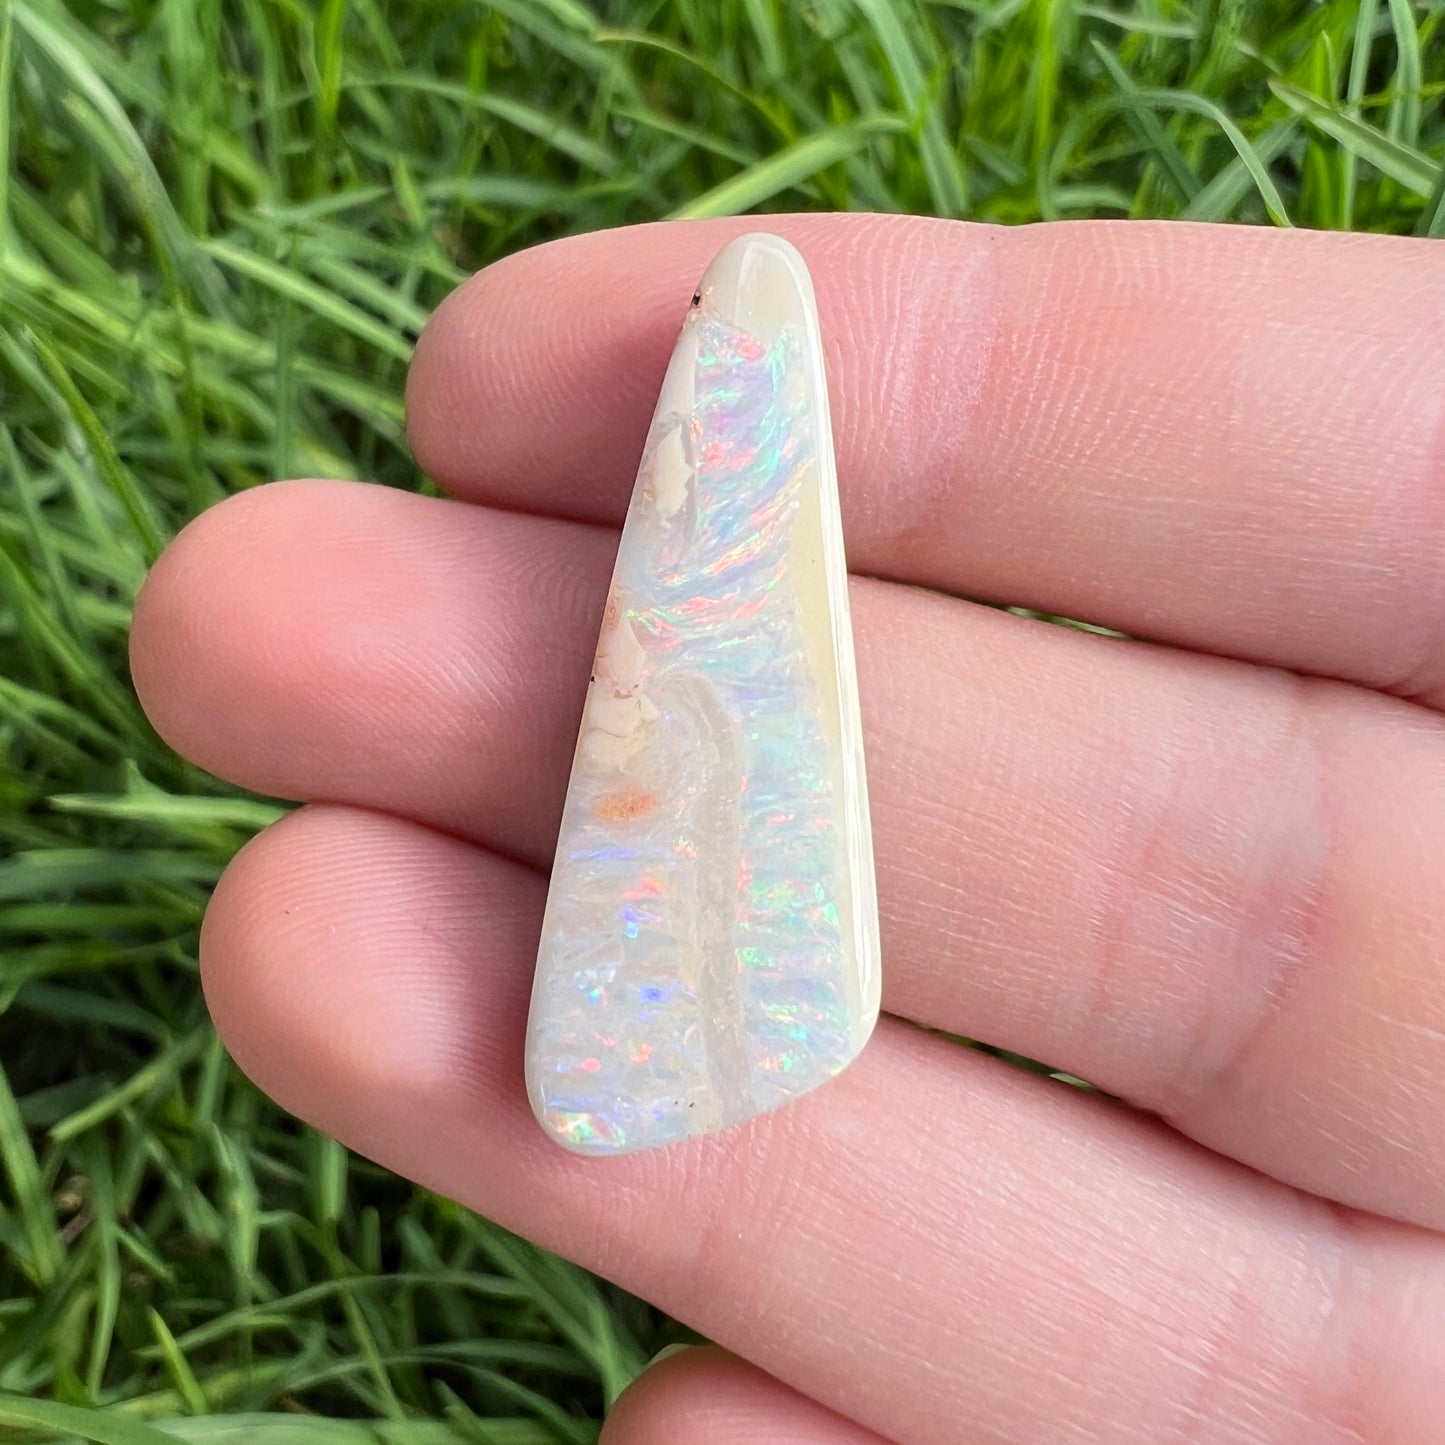 12.52 large pastel boulder opal